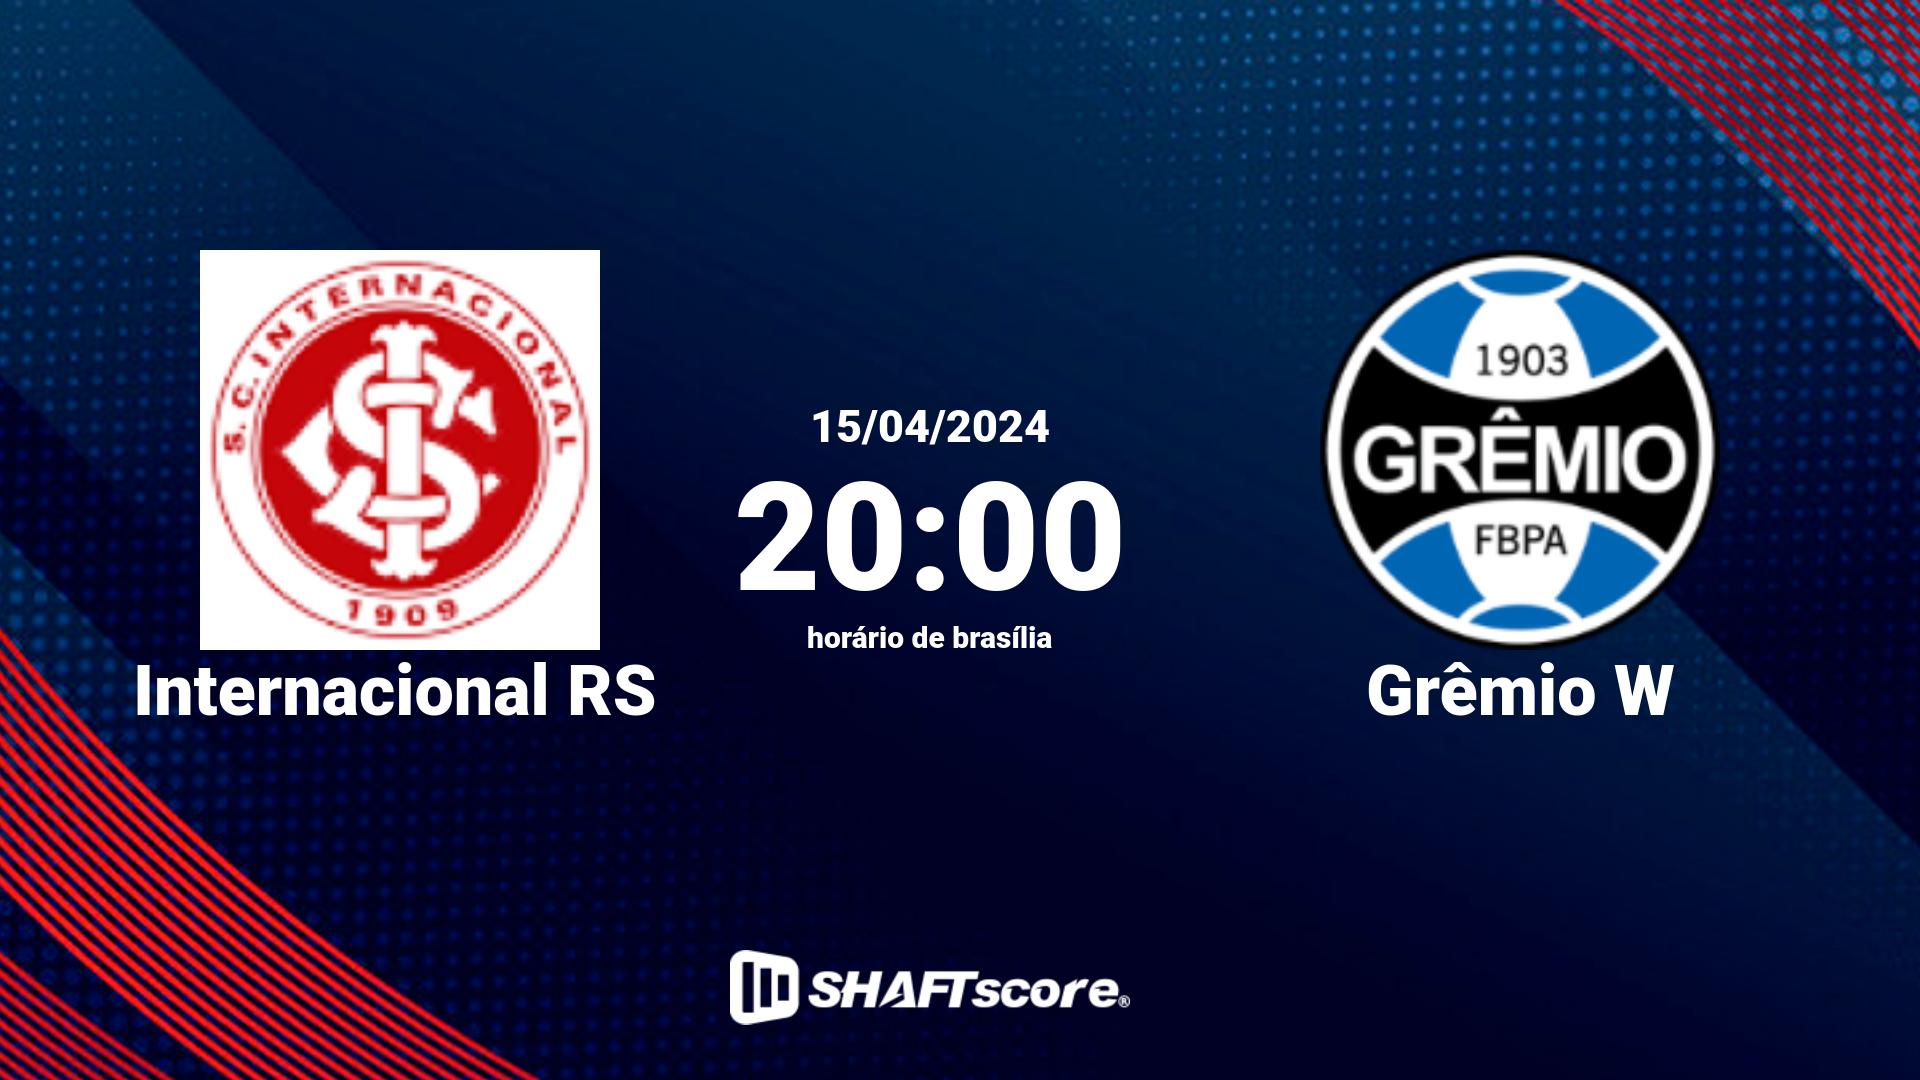 Estatísticas do jogo Internacional RS vs Grêmio W 15.04 20:00